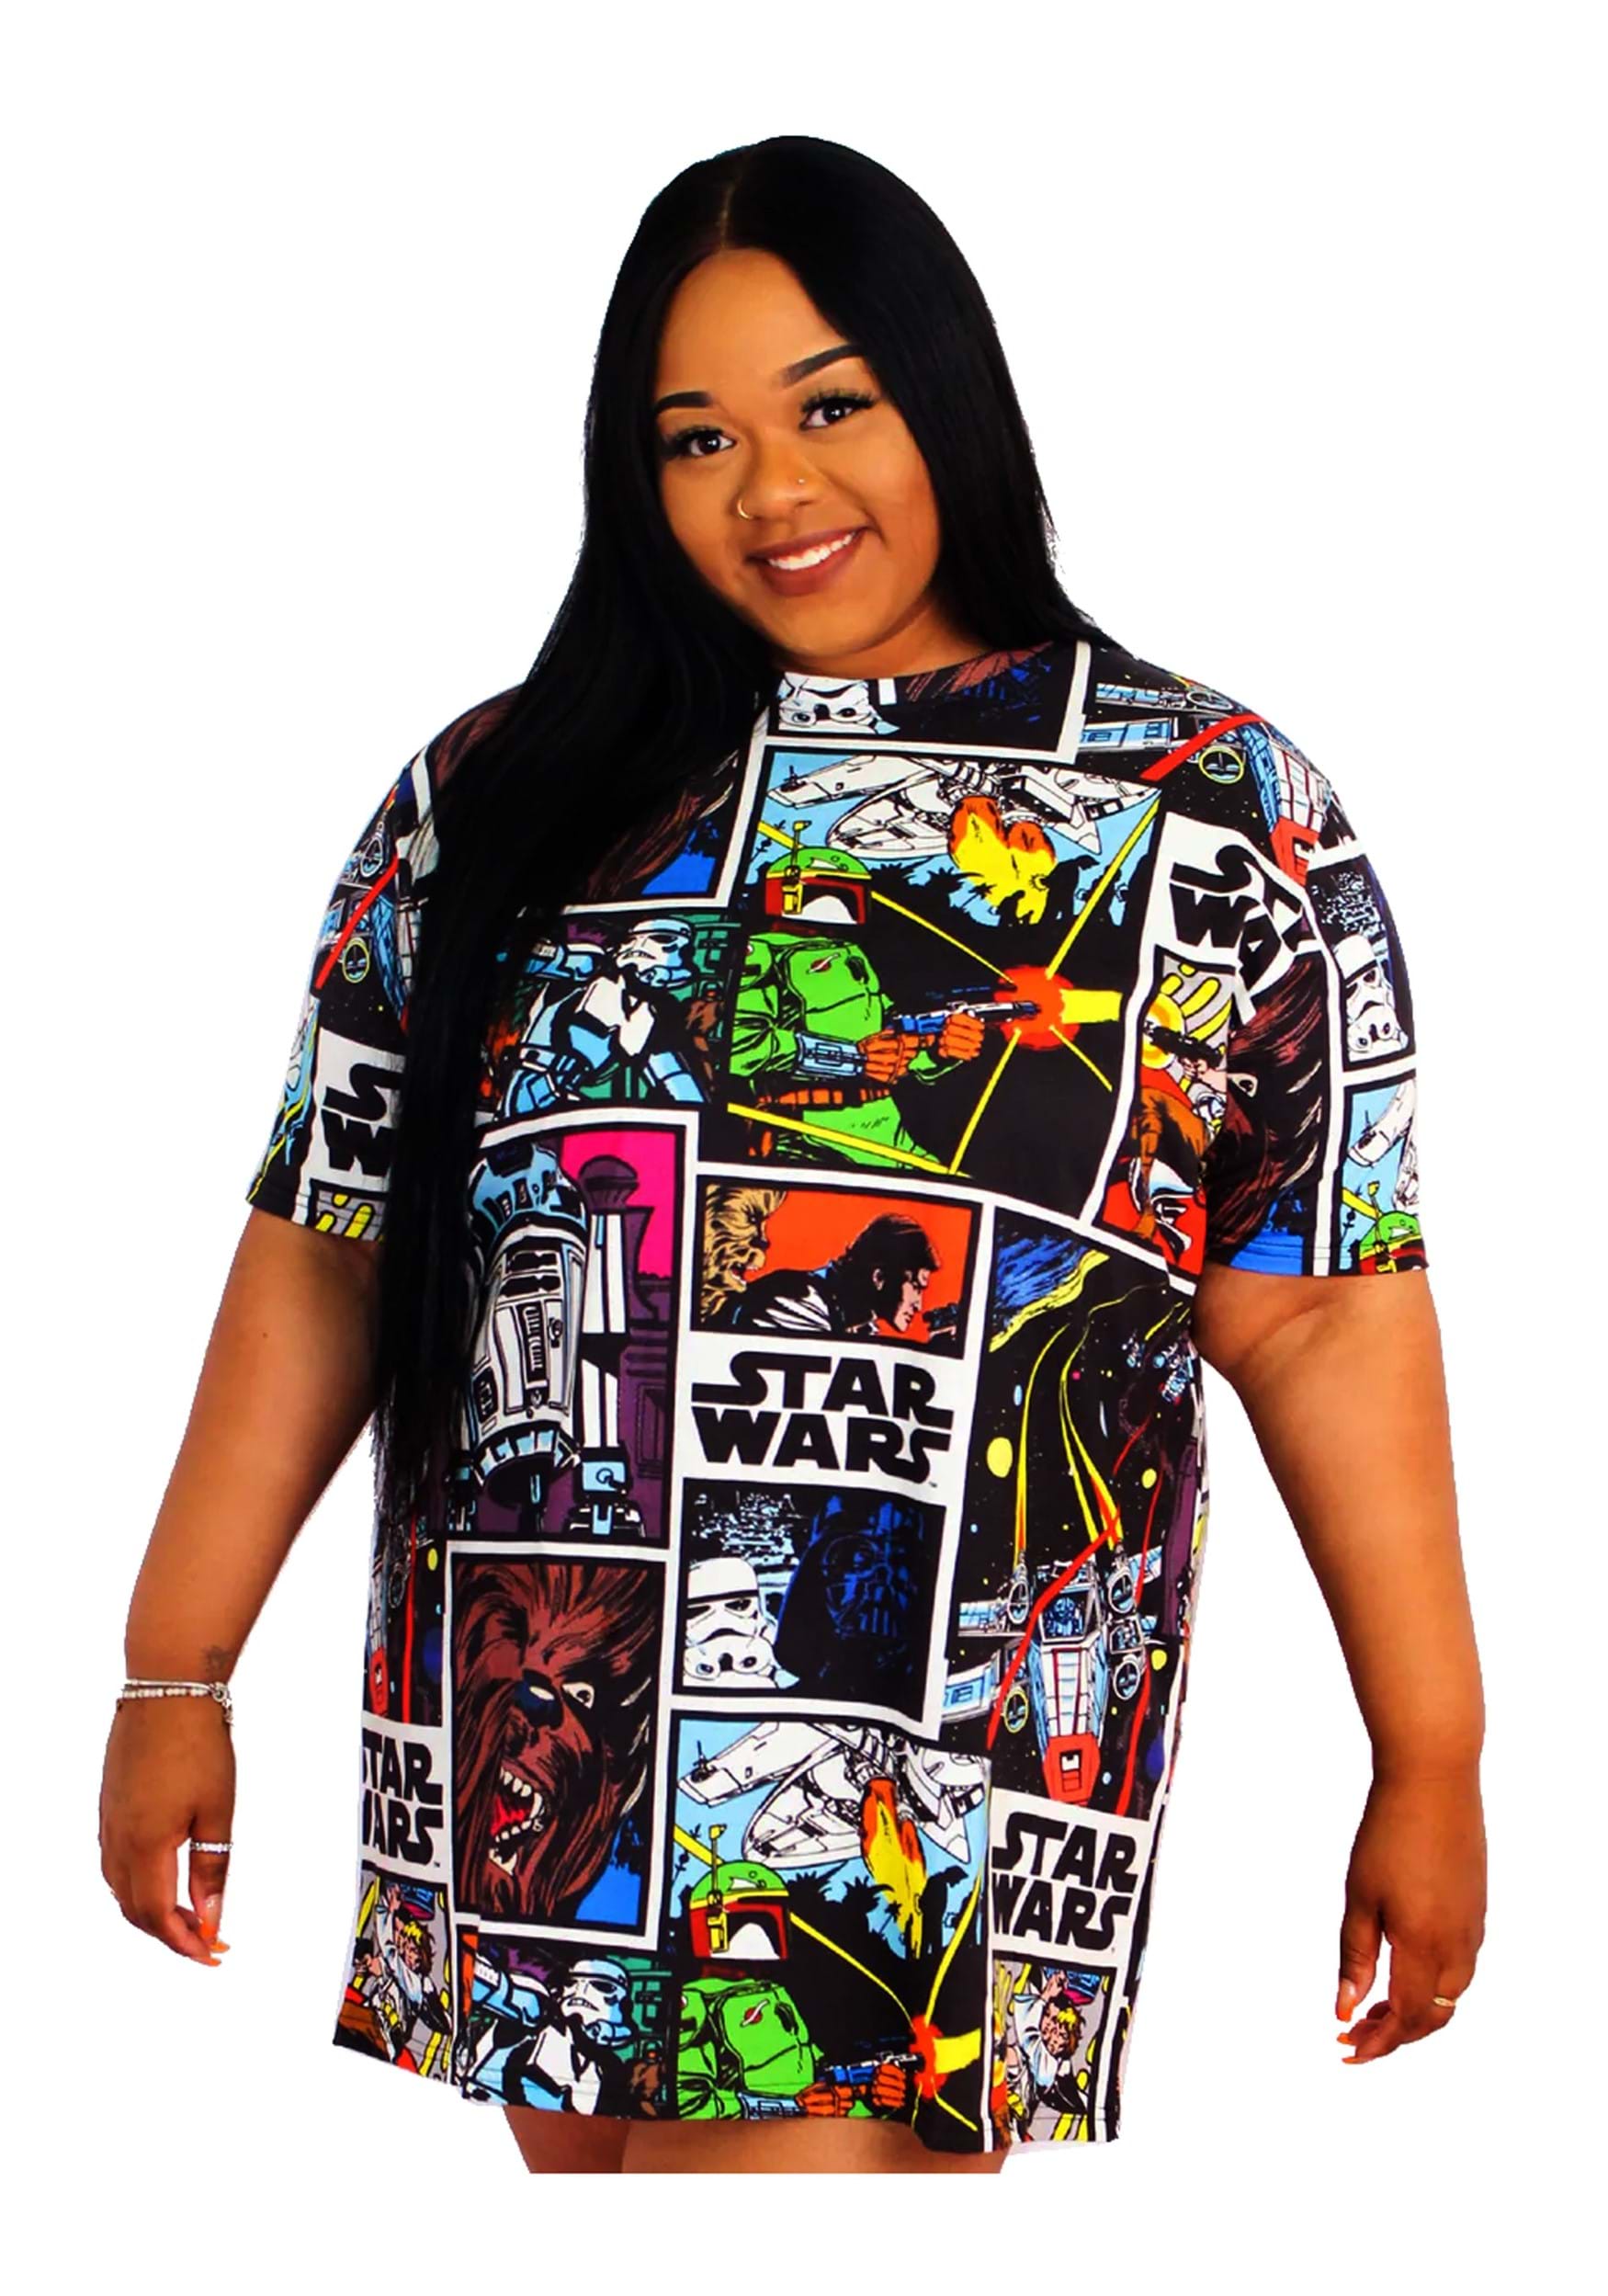 Selvrespekt Leeds omhyggelig Cakeworthy Oversized Comic Star Wars T-Shirt Dress for Women